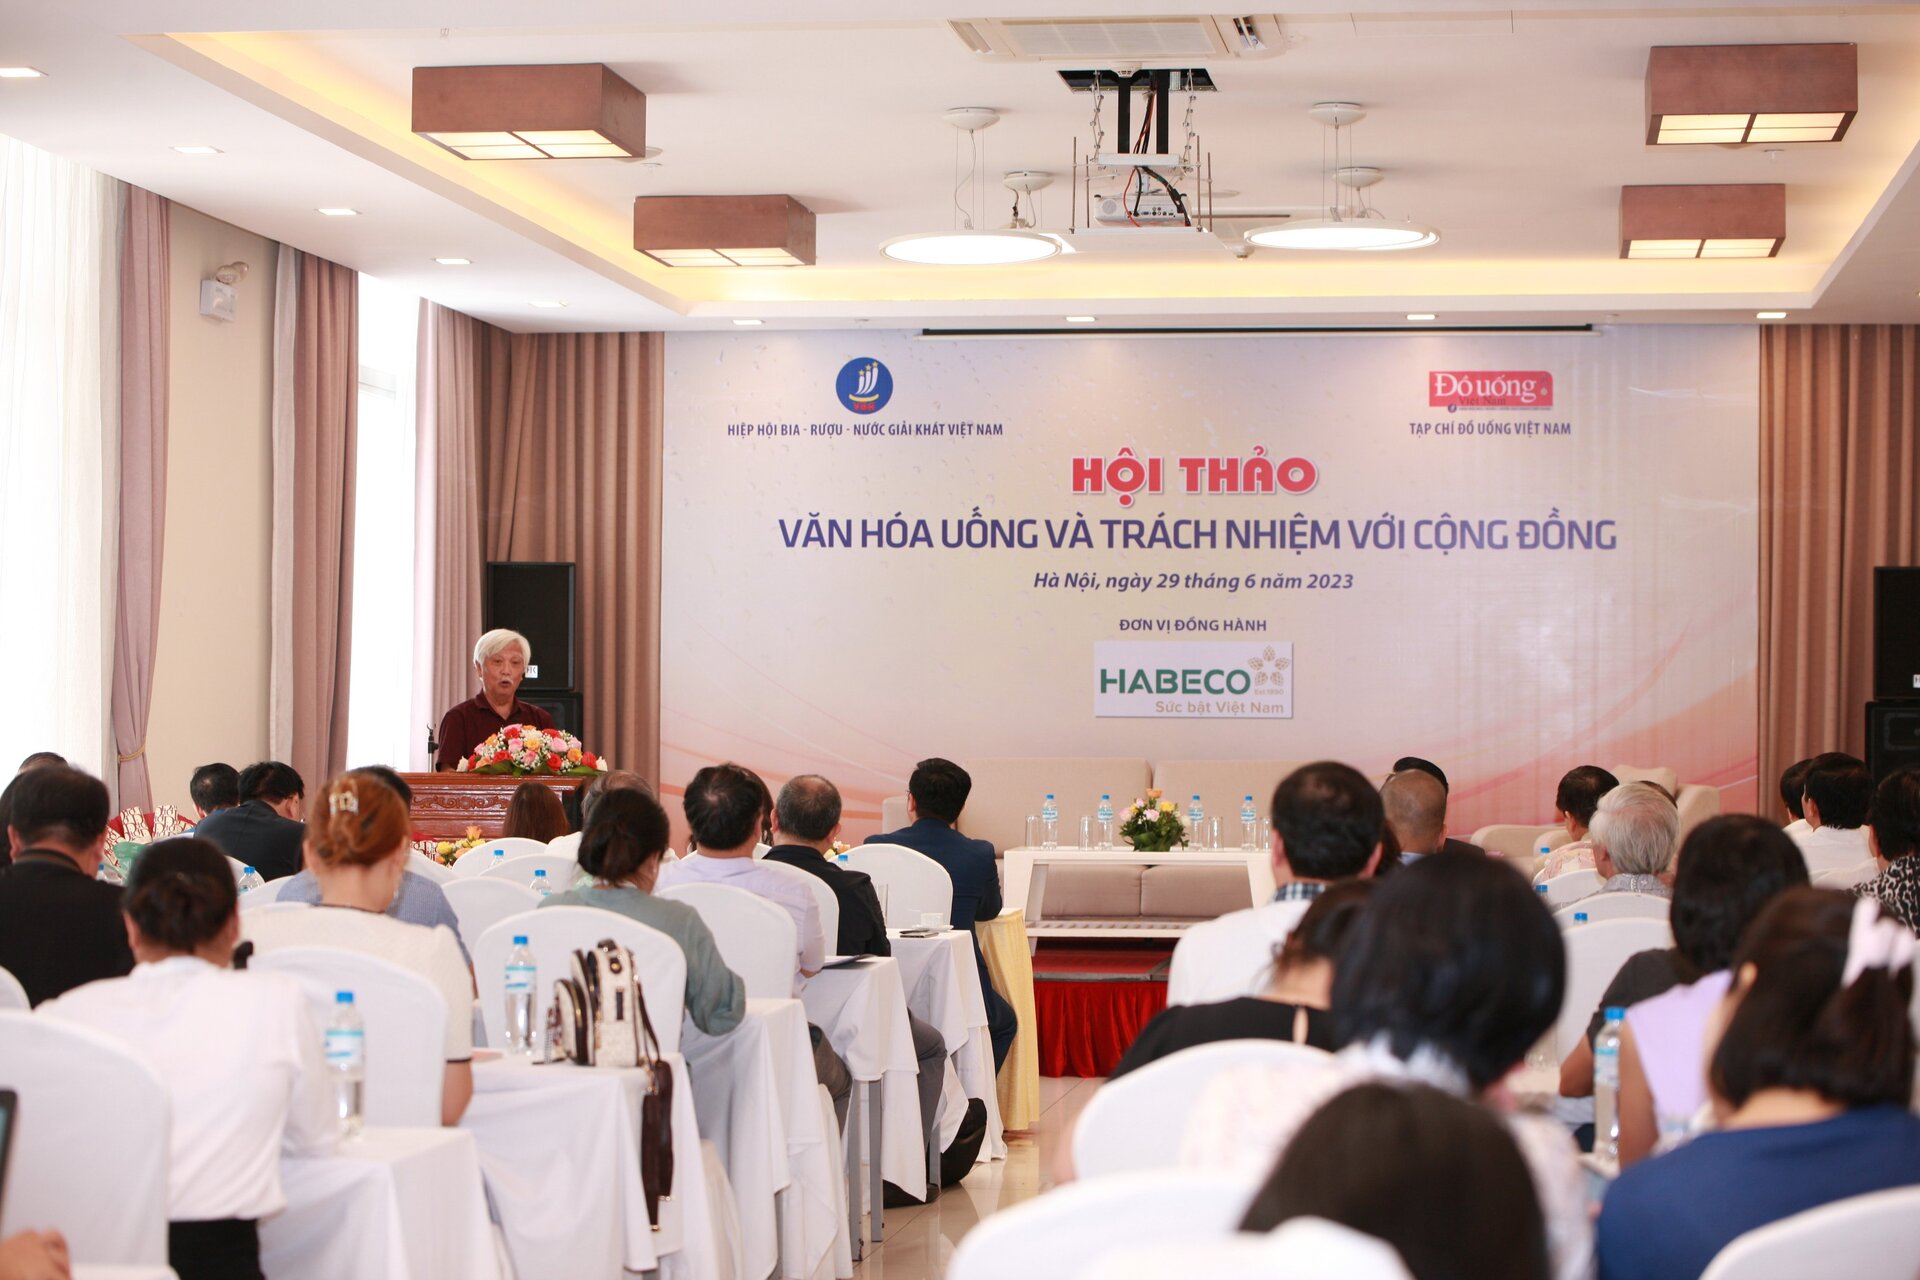 Một trong những nội dung quan trọng được thảo luận tại hội thảo là vấn đề văn hóa sử dụng rượu, bia trên thế giới nói chung và Việt Nam nói riêng